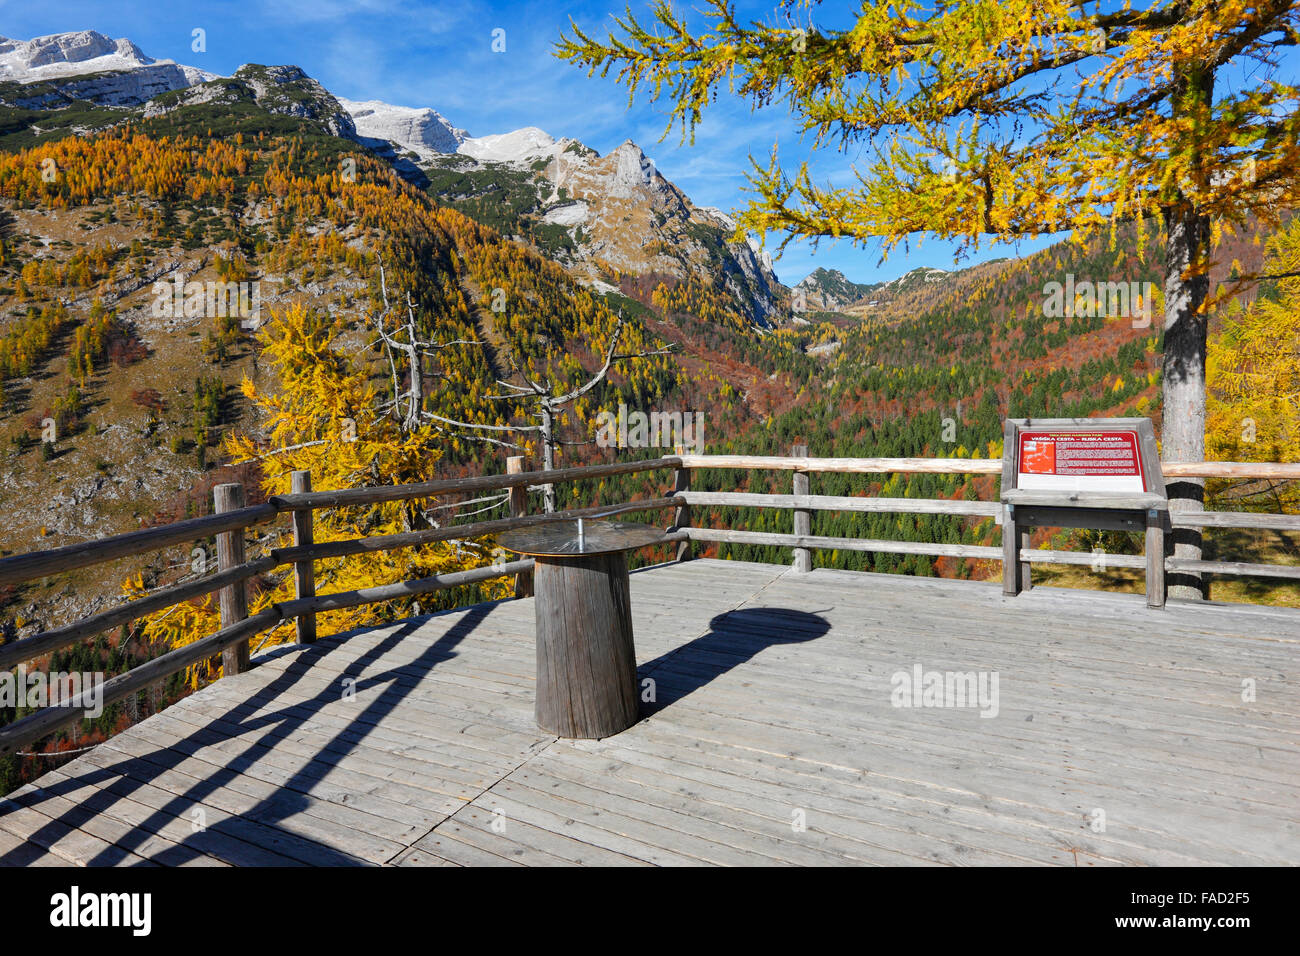 Viepiont près de col Vrsic dans les Alpes Juliennes en automne, la Slovénie. Banque D'Images